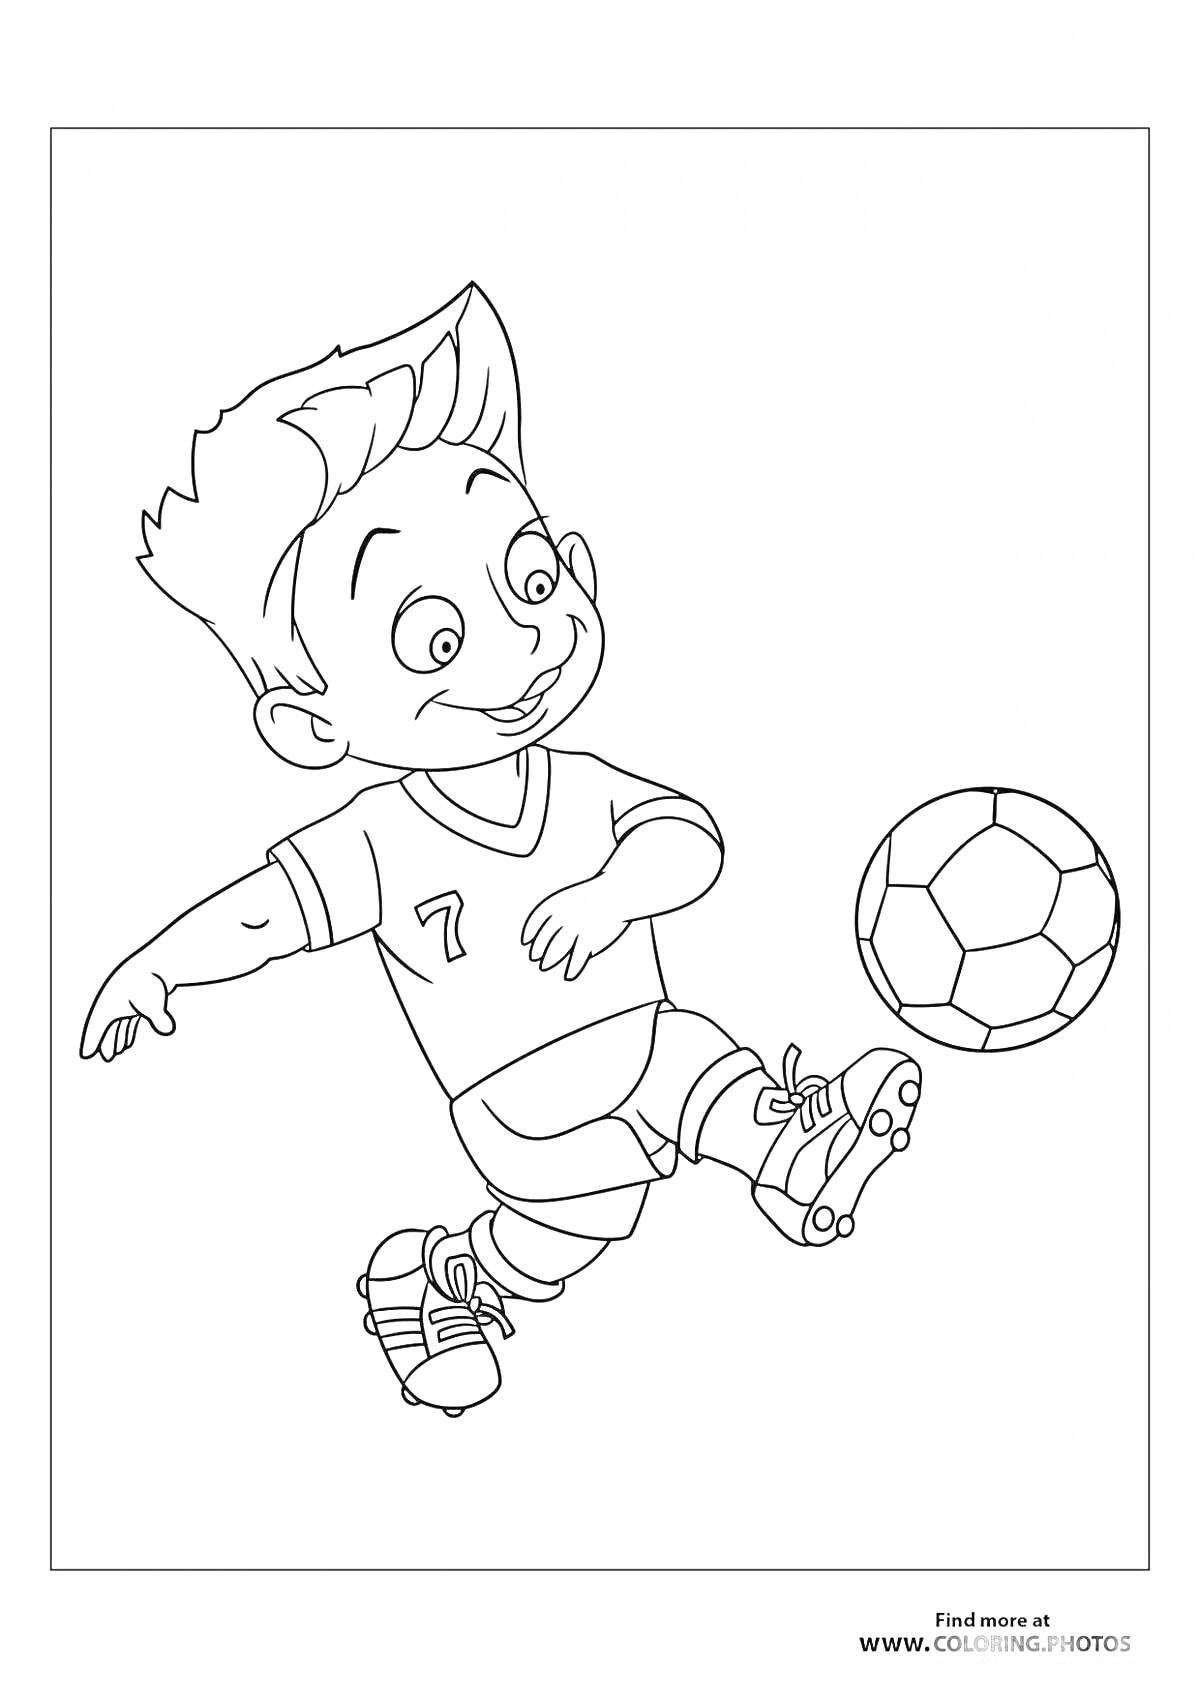 Раскраска Мальчик в футбольной форме играет в футбол, набивая мяч